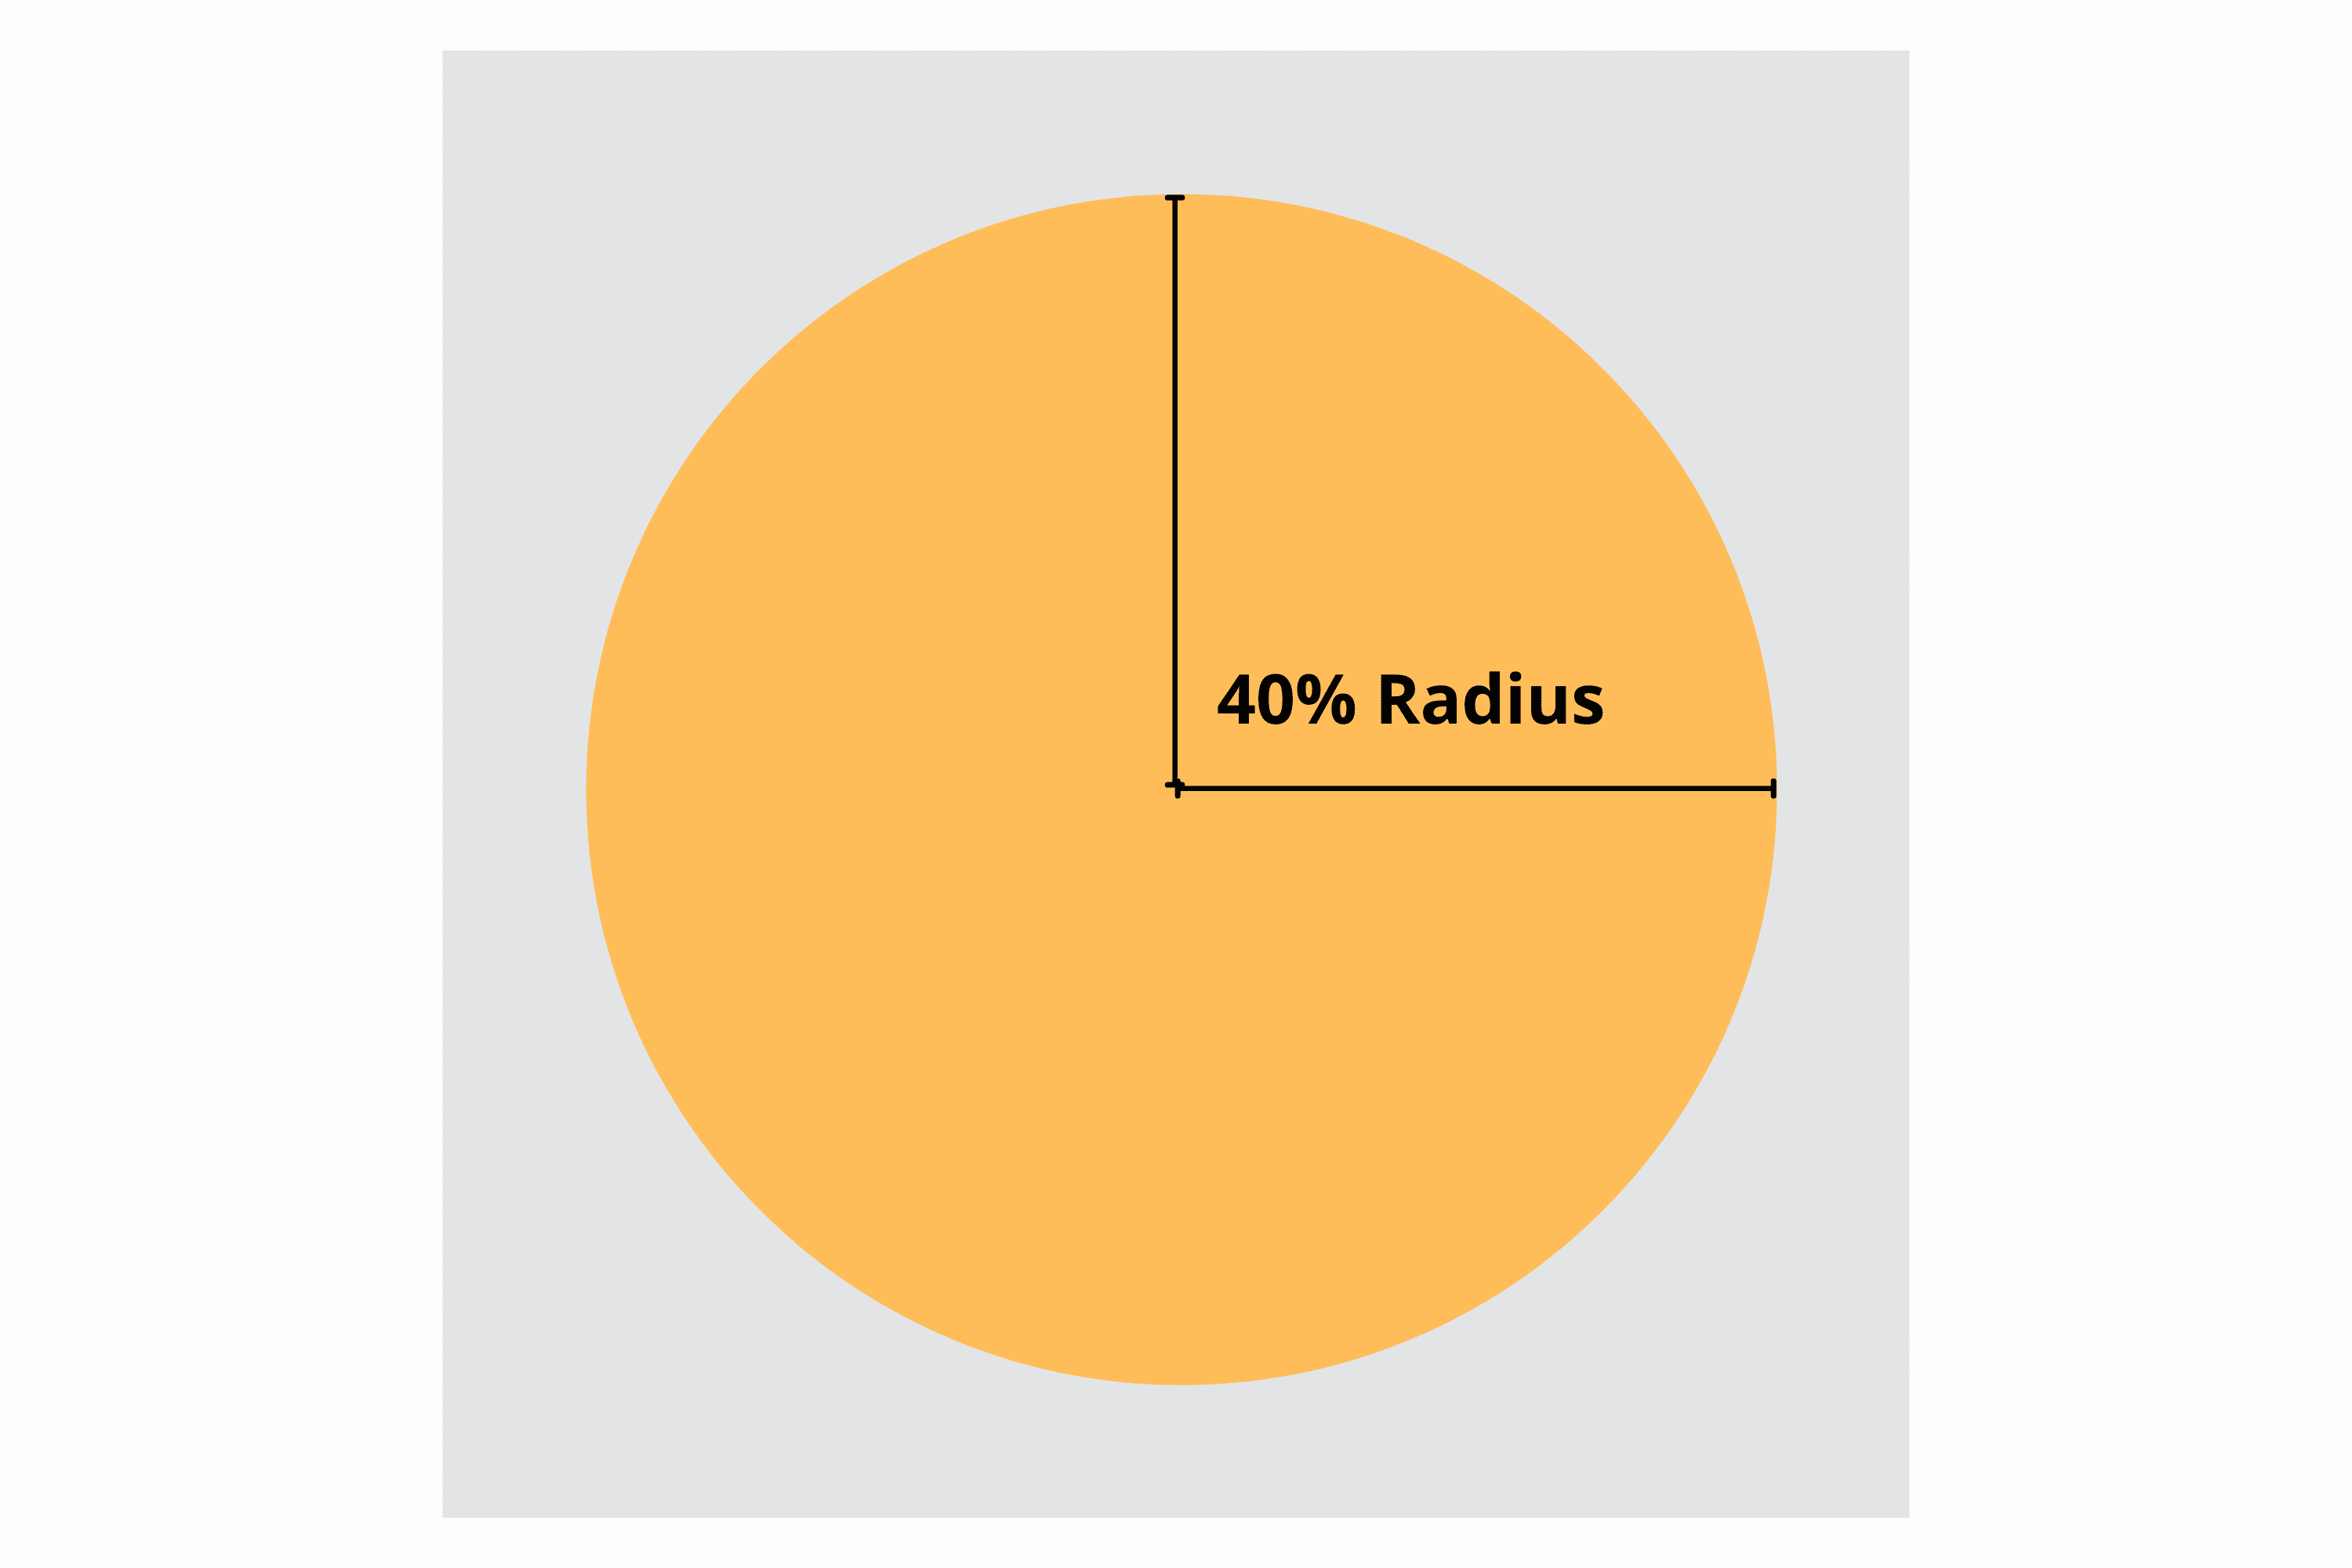 Der sichere Bereich, der innerhalb des quadratischen Symbols als Radius von 40 % in der Mitte des Kreises gekennzeichnet ist